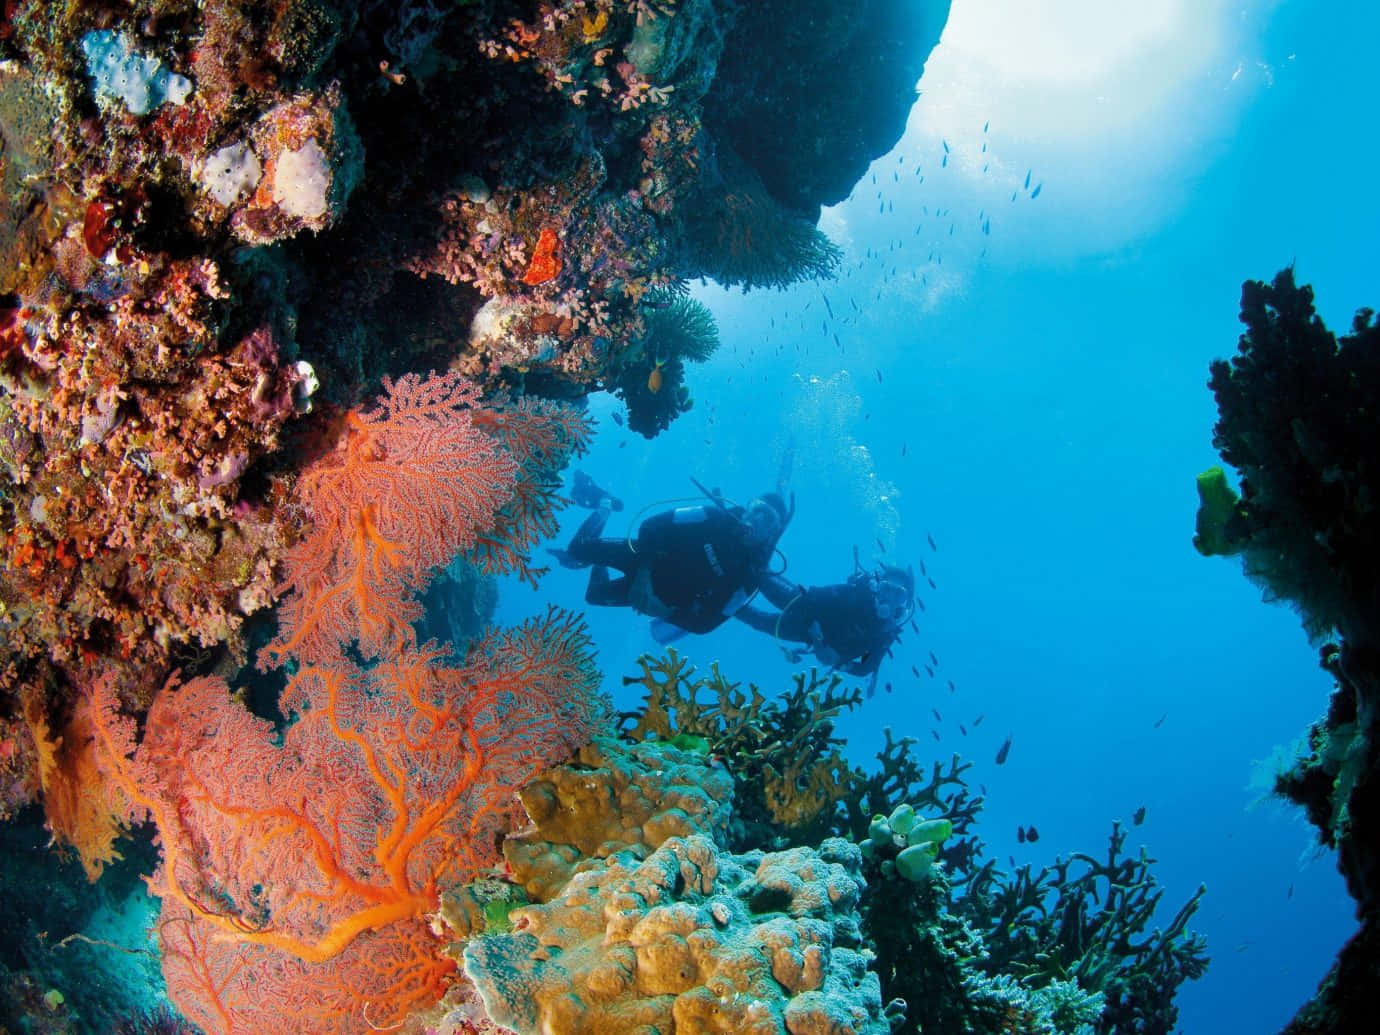 Imagenun Hermoso Arrecife De Coral Se Encuentra Debajo De Las Aguas Turquesas.